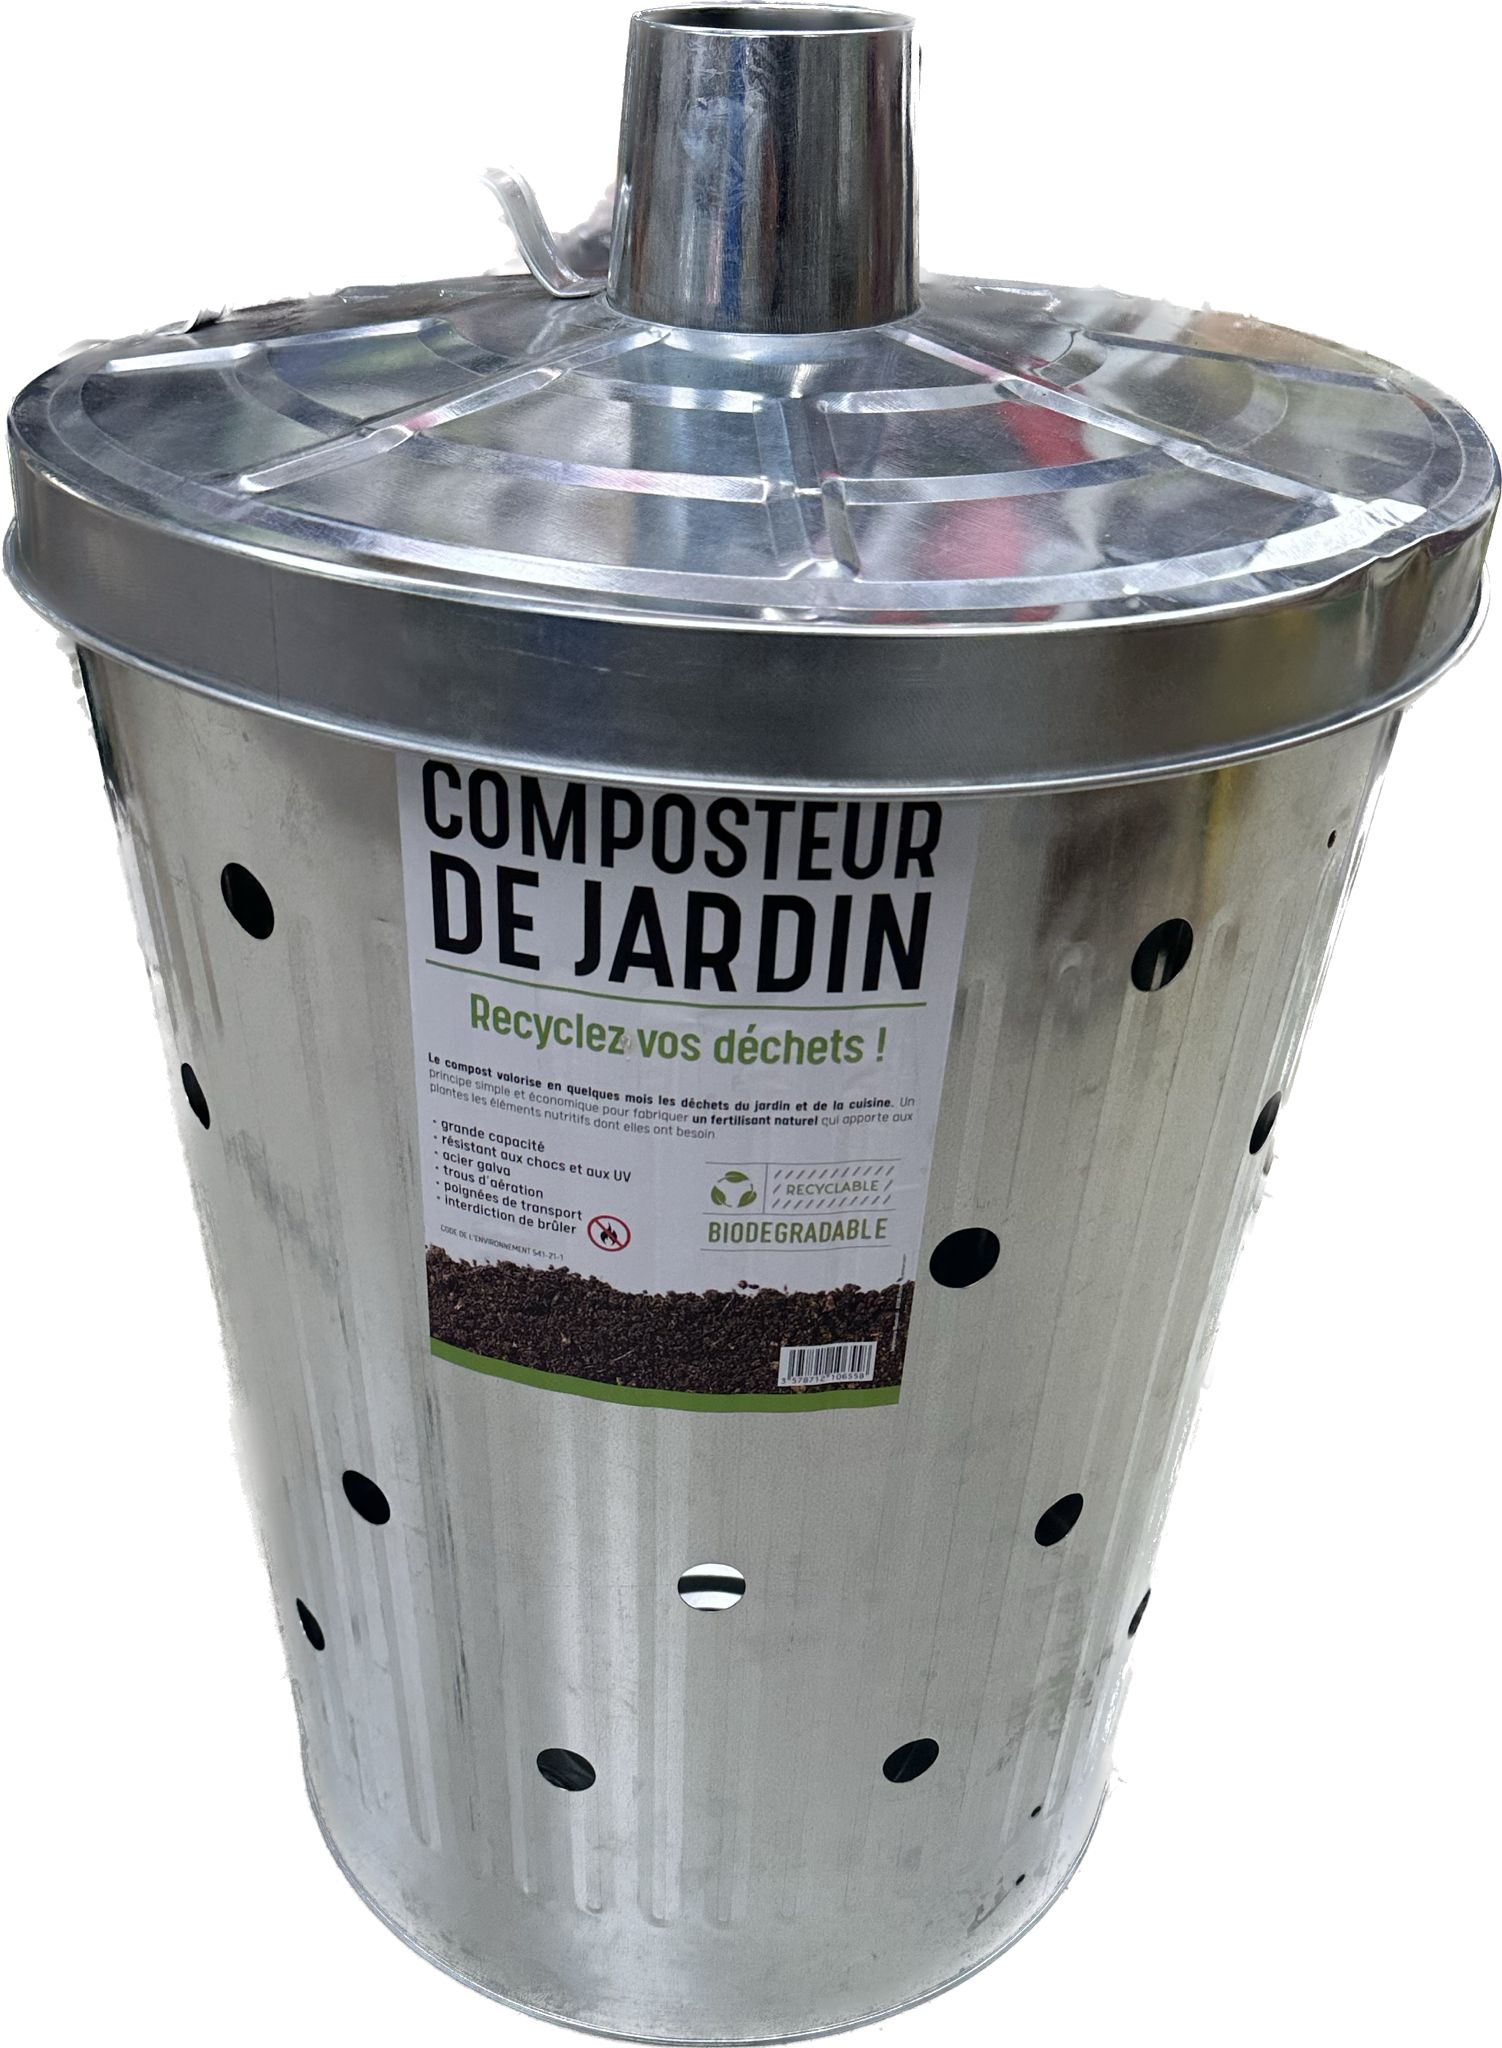 Cubo de basura con ruedas cilindrico acero inox 100 litros